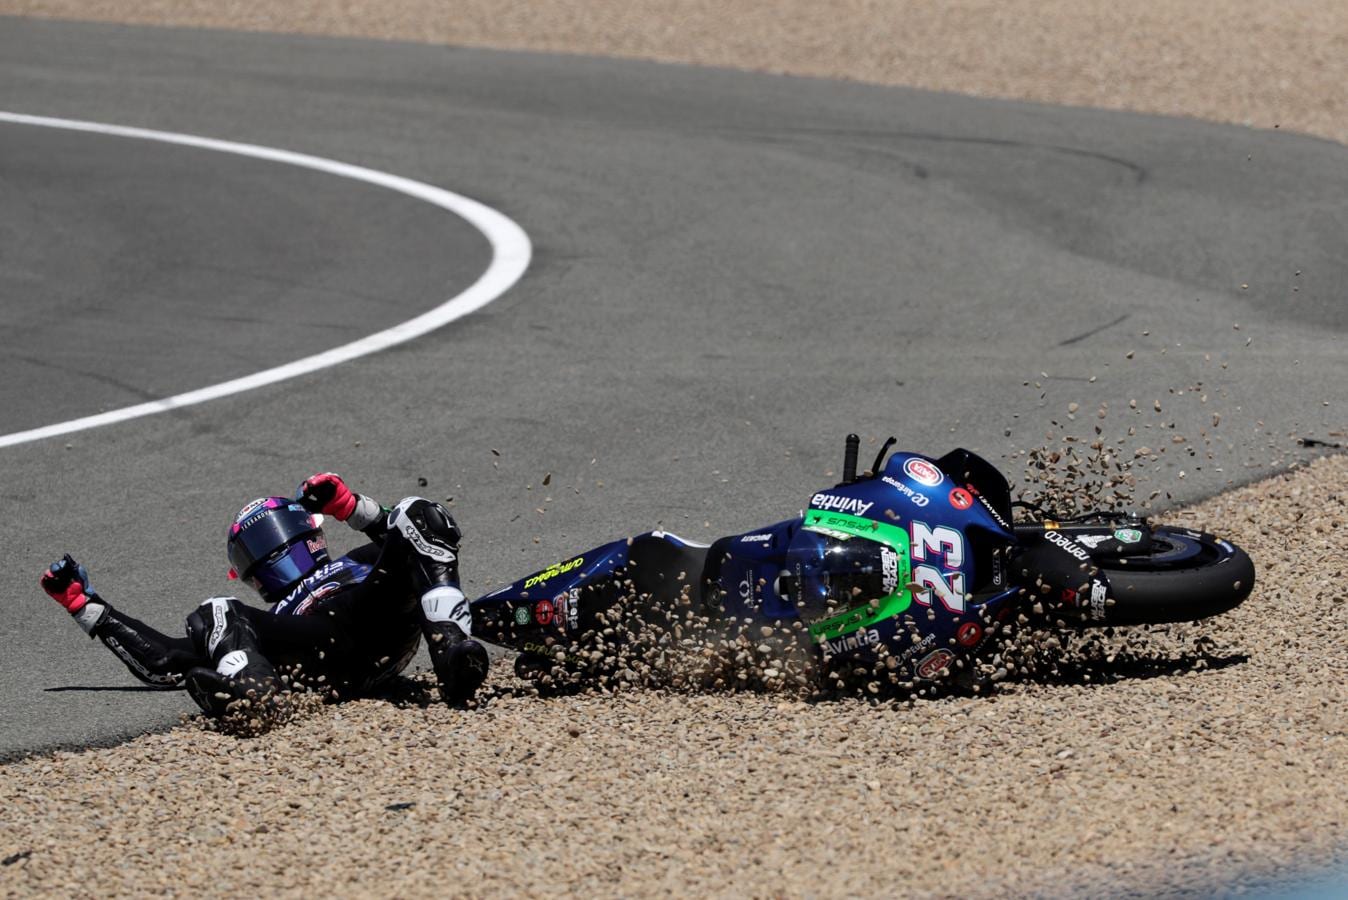 FOTOS: Las caídas más espectaculares del MotoGP Jerez 2021